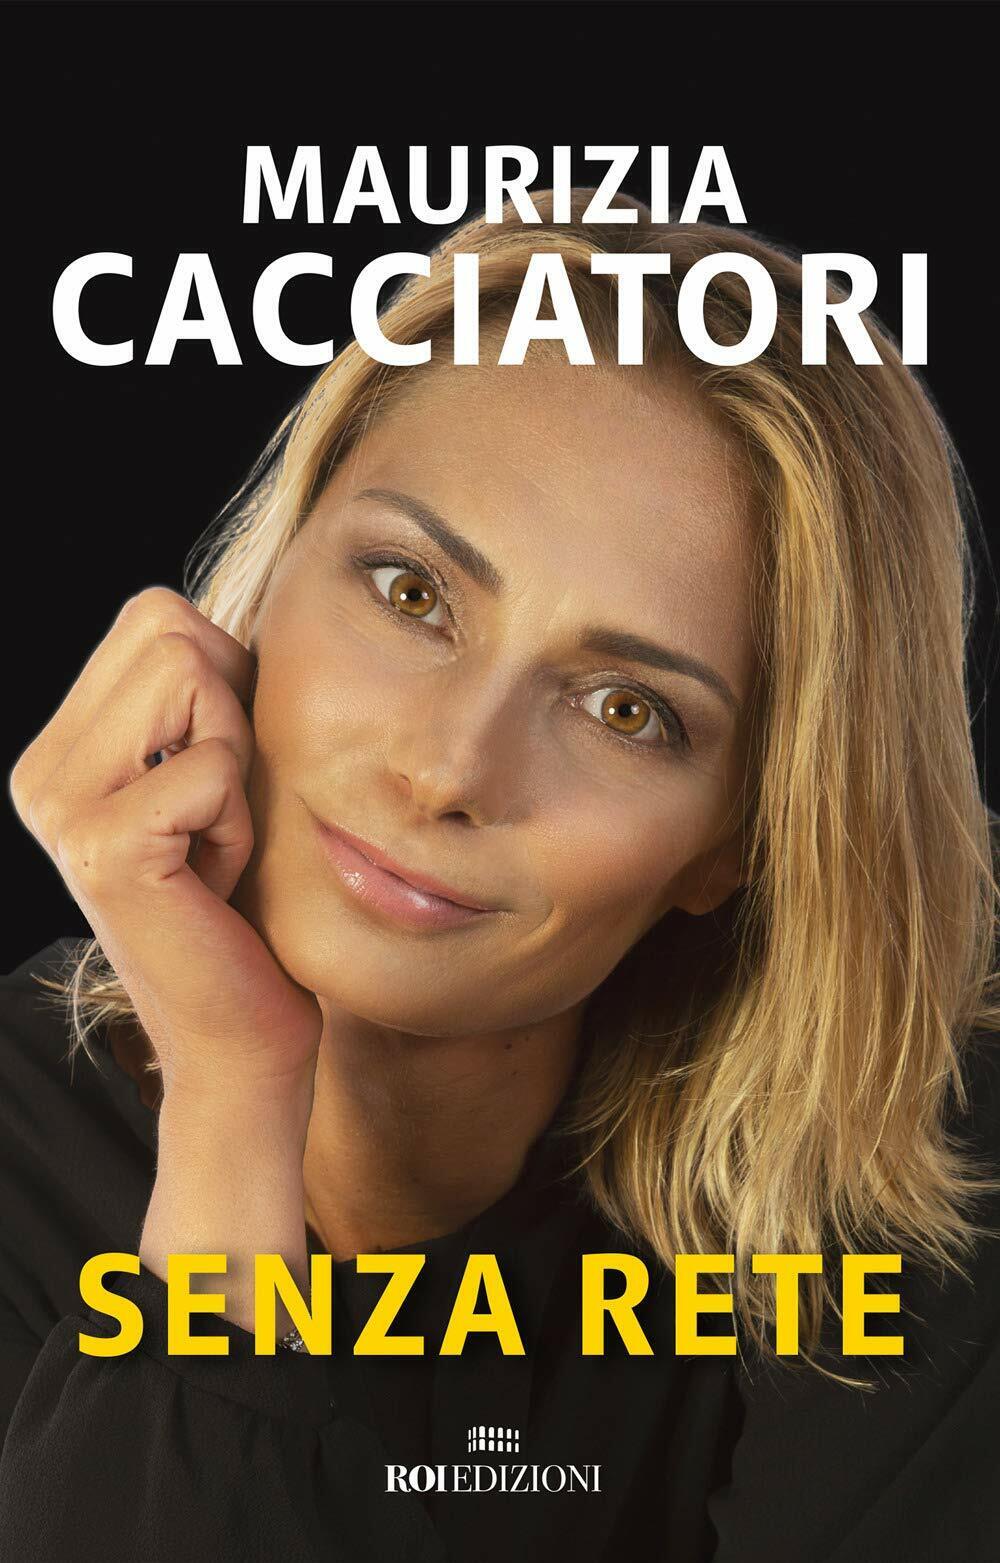 Senza rete - Maurizia Cacciatori - Roi edizioni, 2018